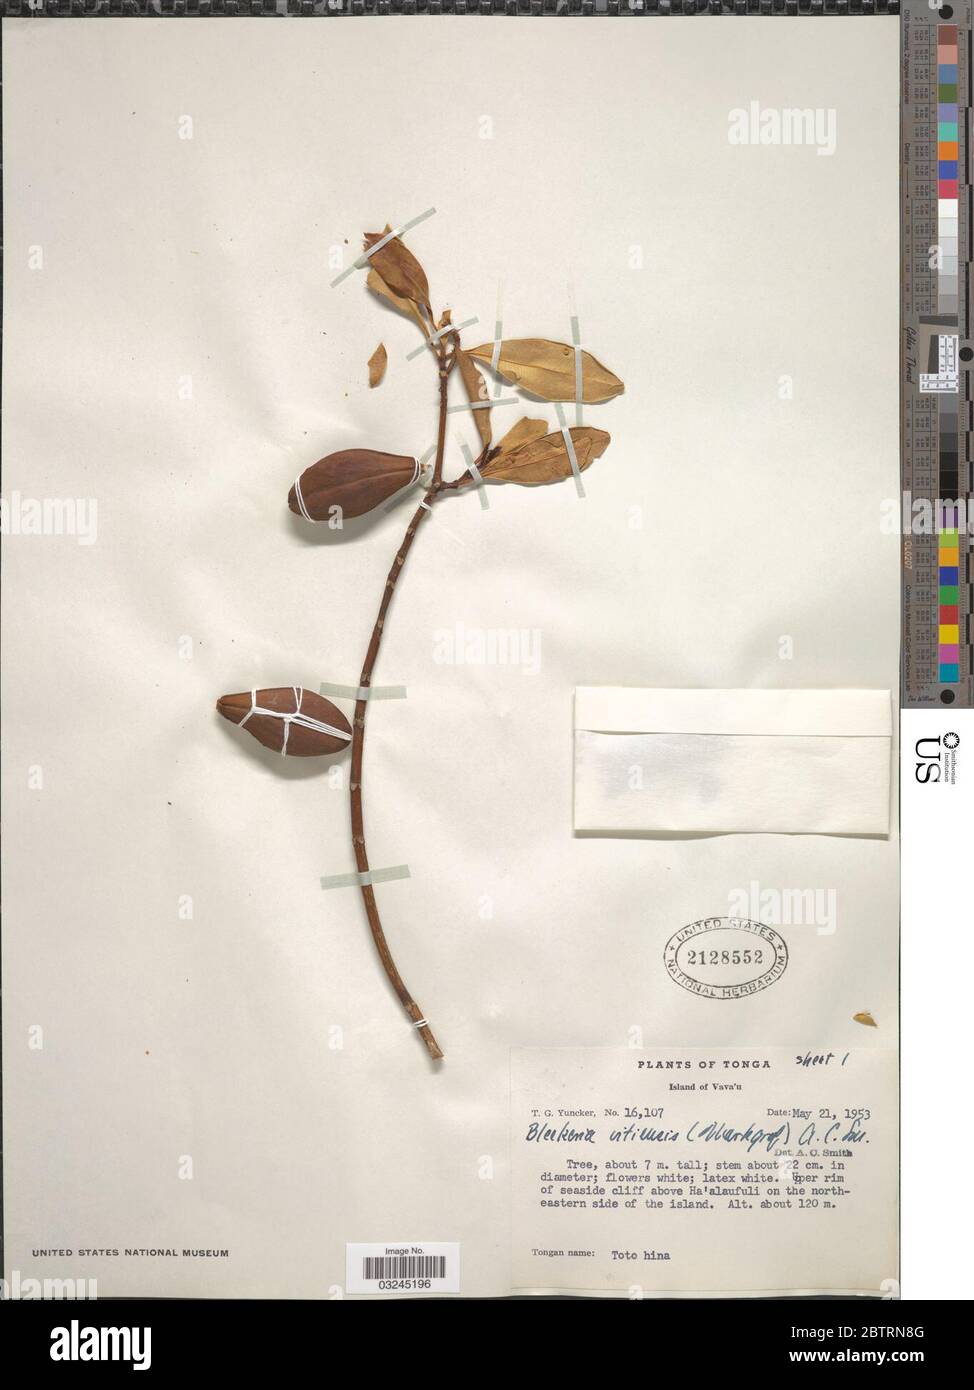 Ochrosia vitiensis Markgr Pichon. Stock Photo